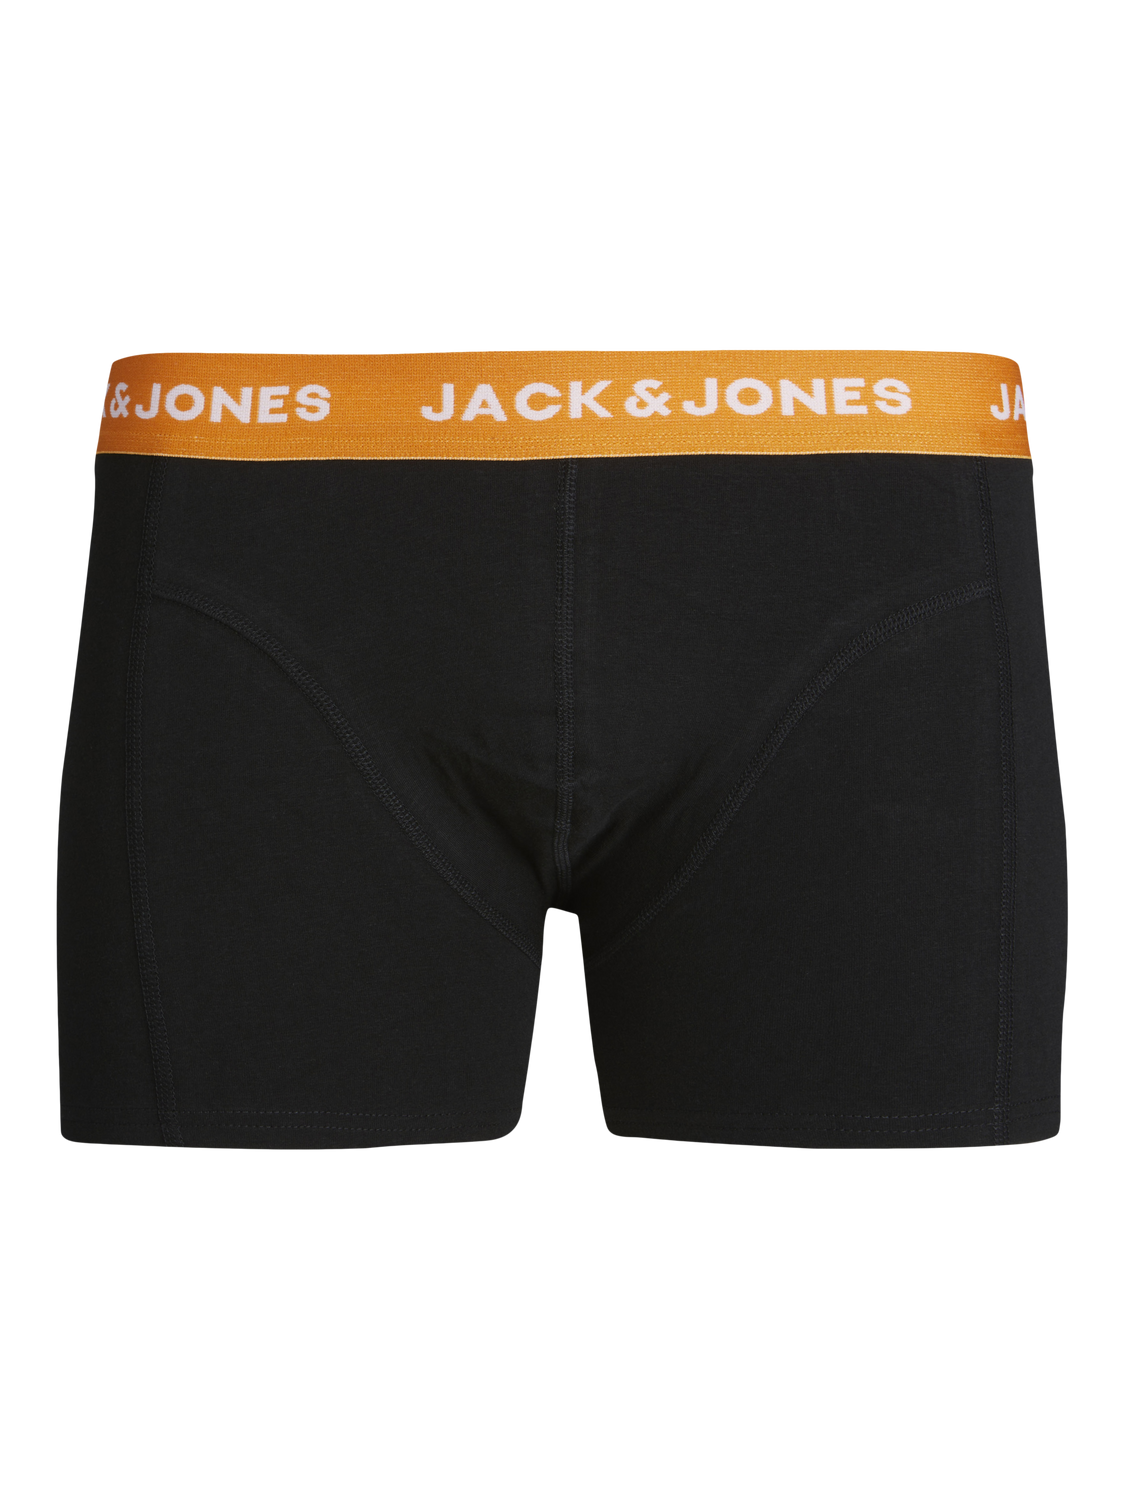 Jack & Jones Plus Size Paquete de 3 Calções de banho -Dark Green - 12259899